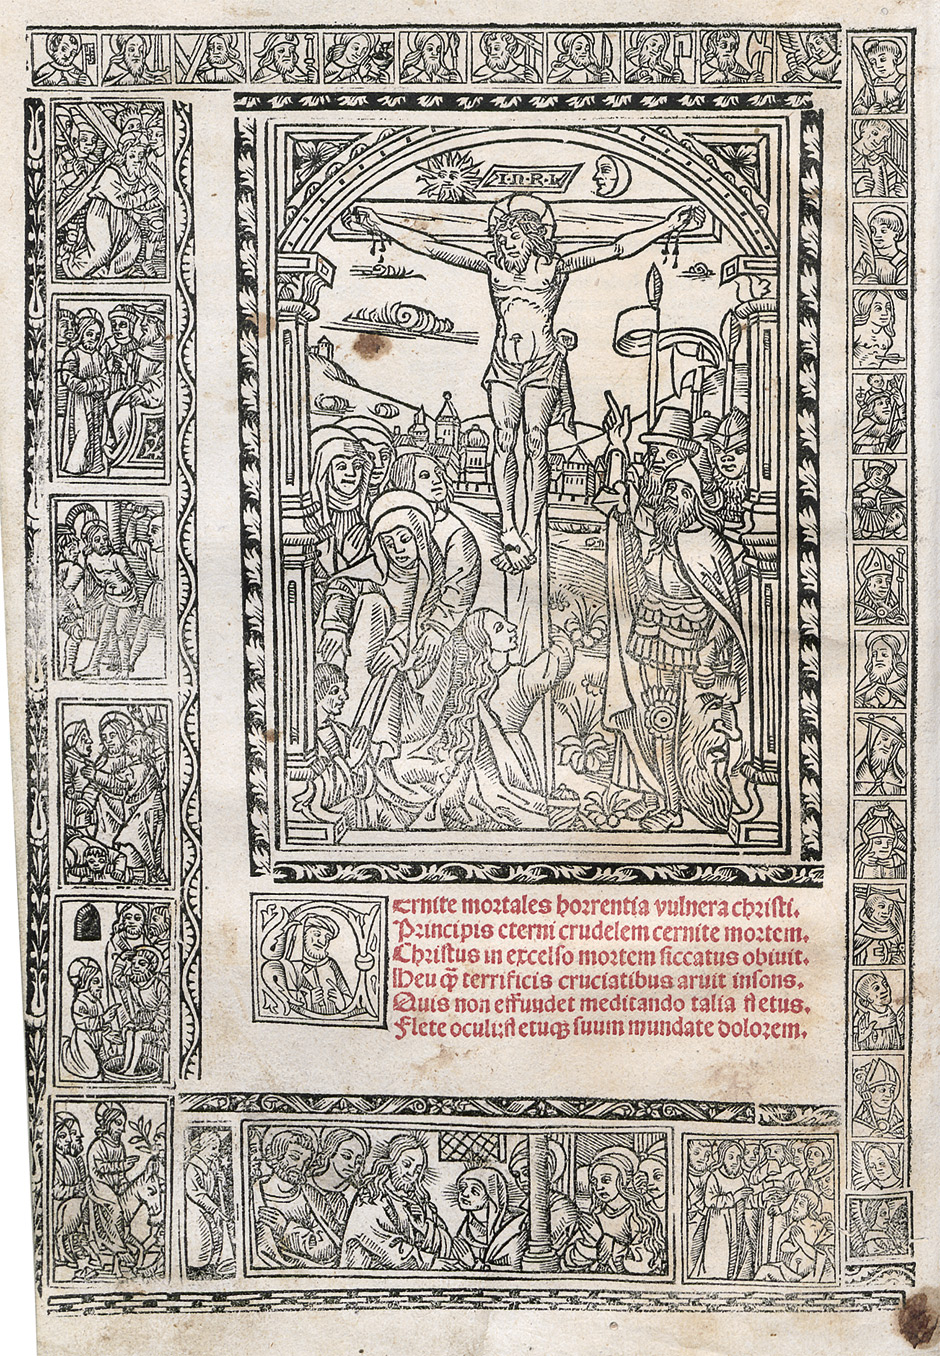 Lot 1121, Auction  115, Guilelmus Parisiensis,  Postille maiores in Epistolas et Euangelia per totius anni de cursum: